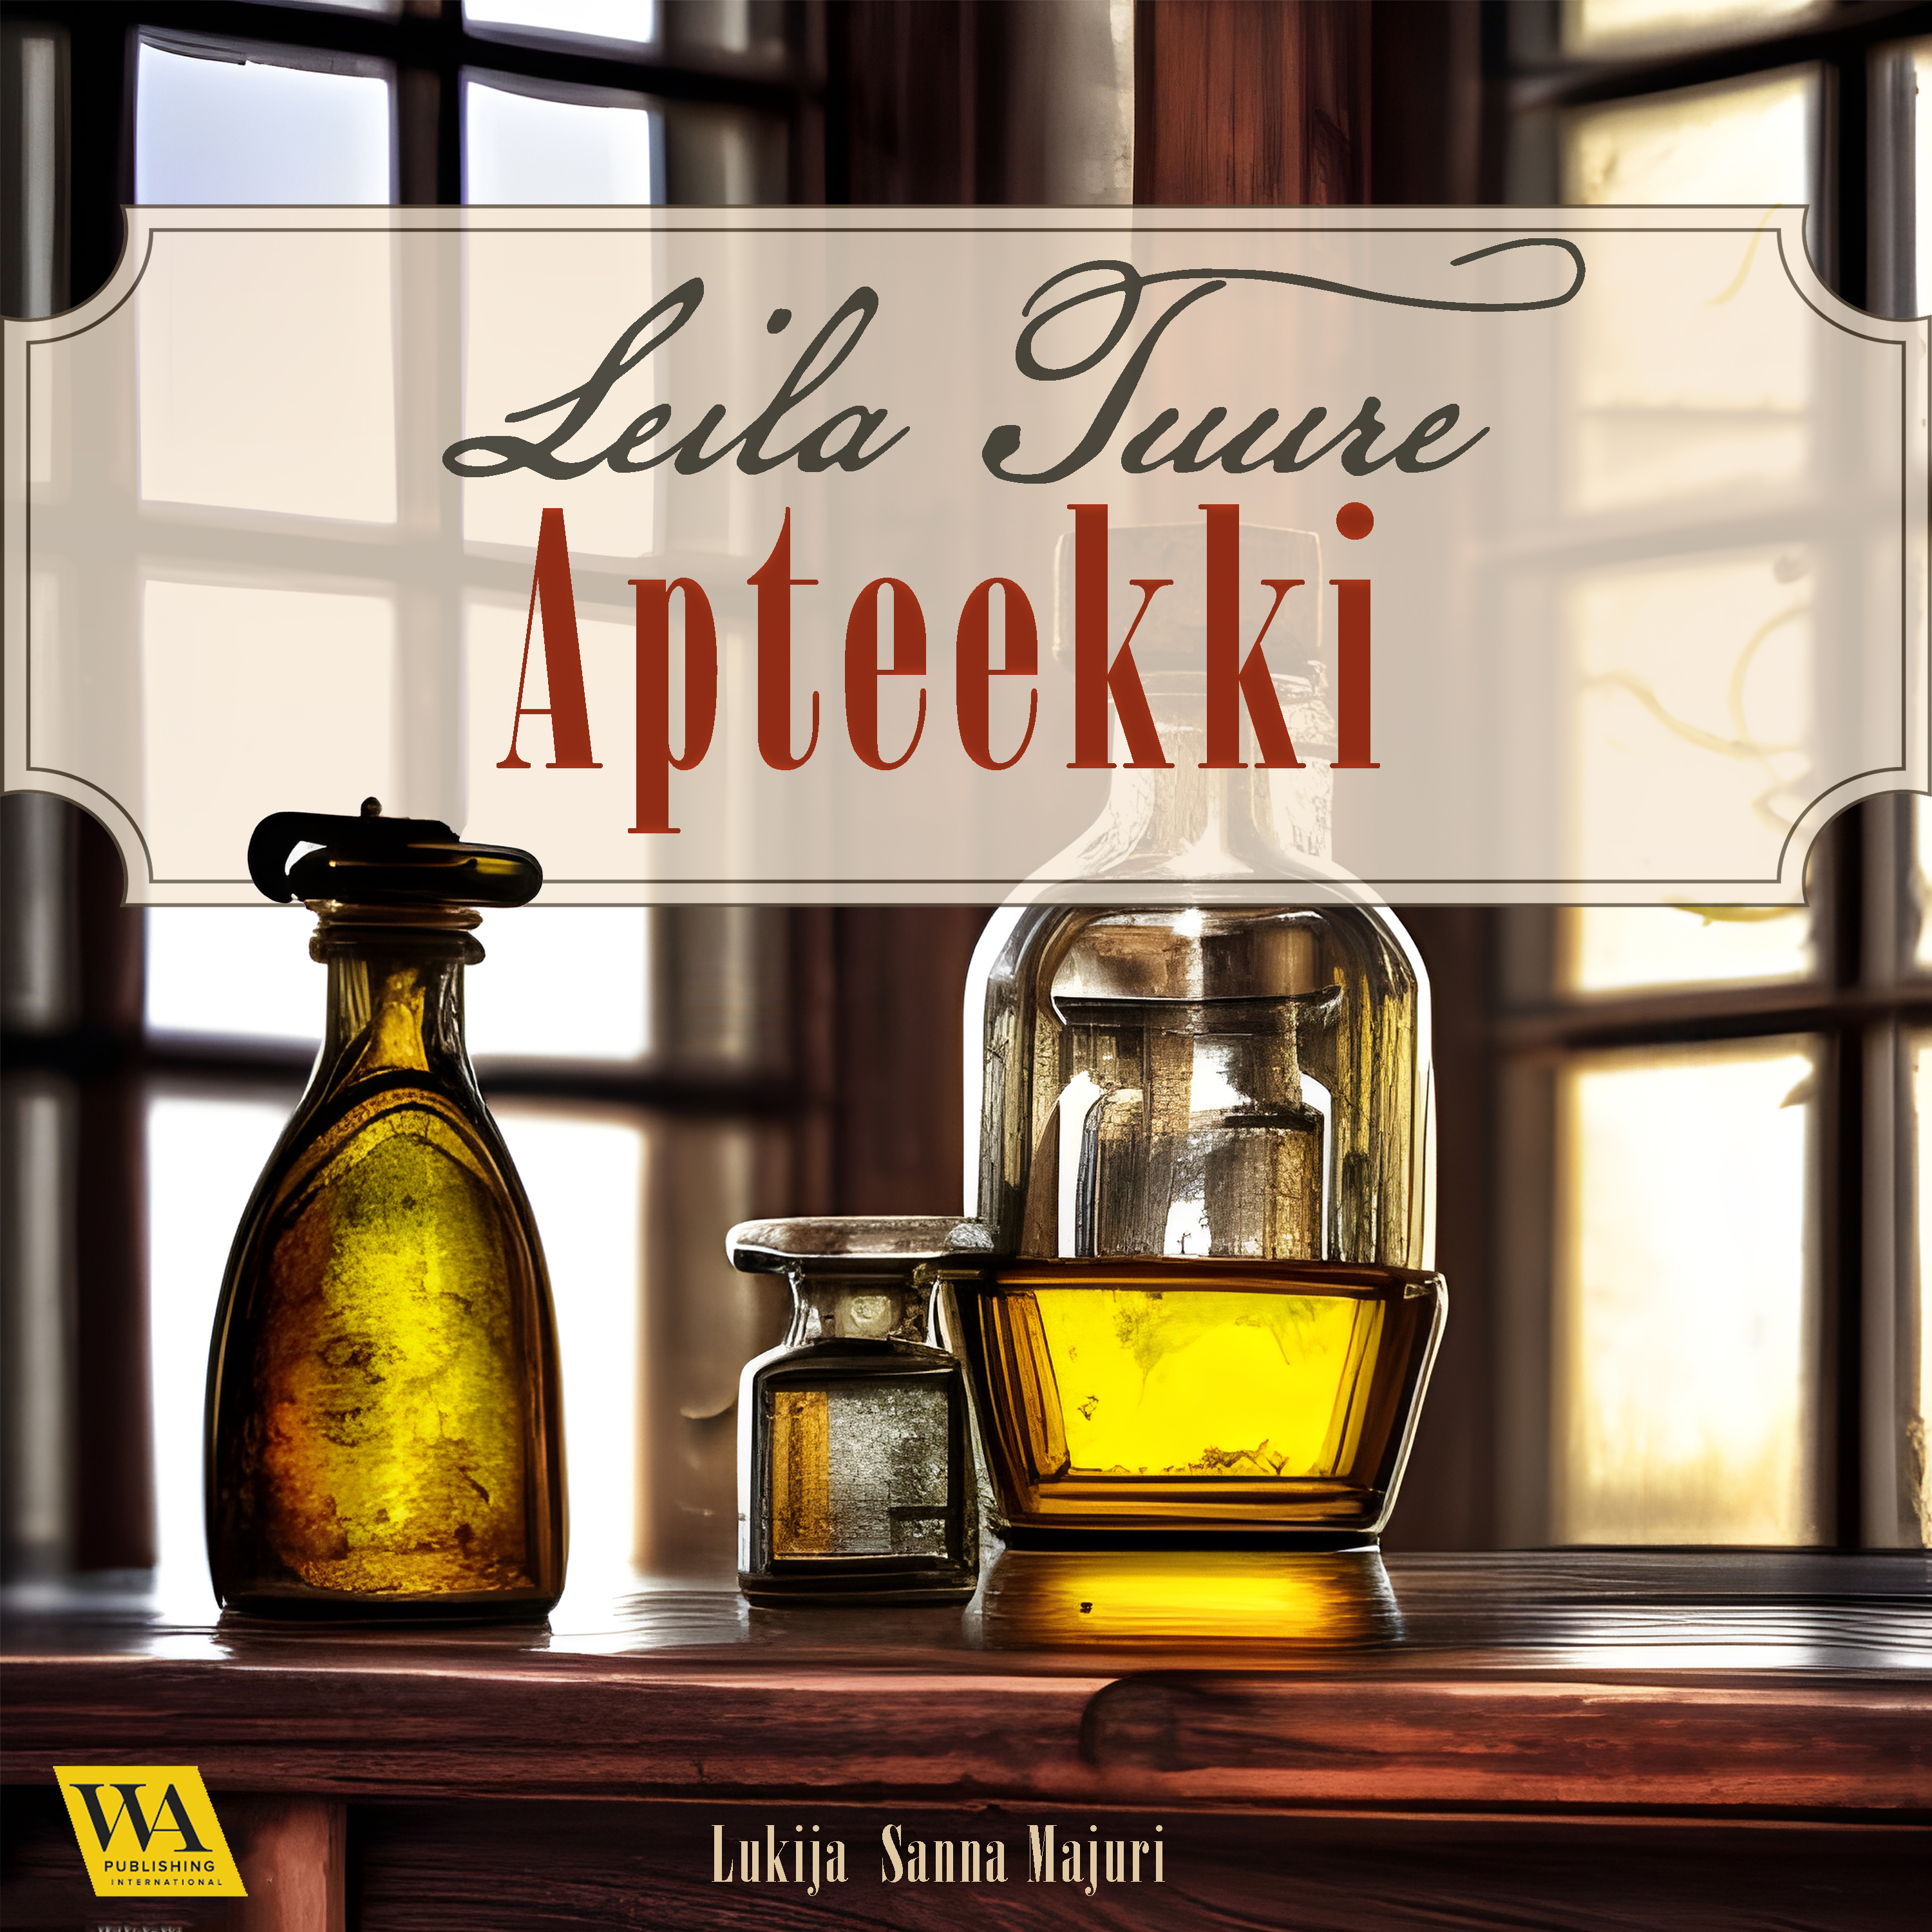 Tuure, Leila - Apteekki, audiobook